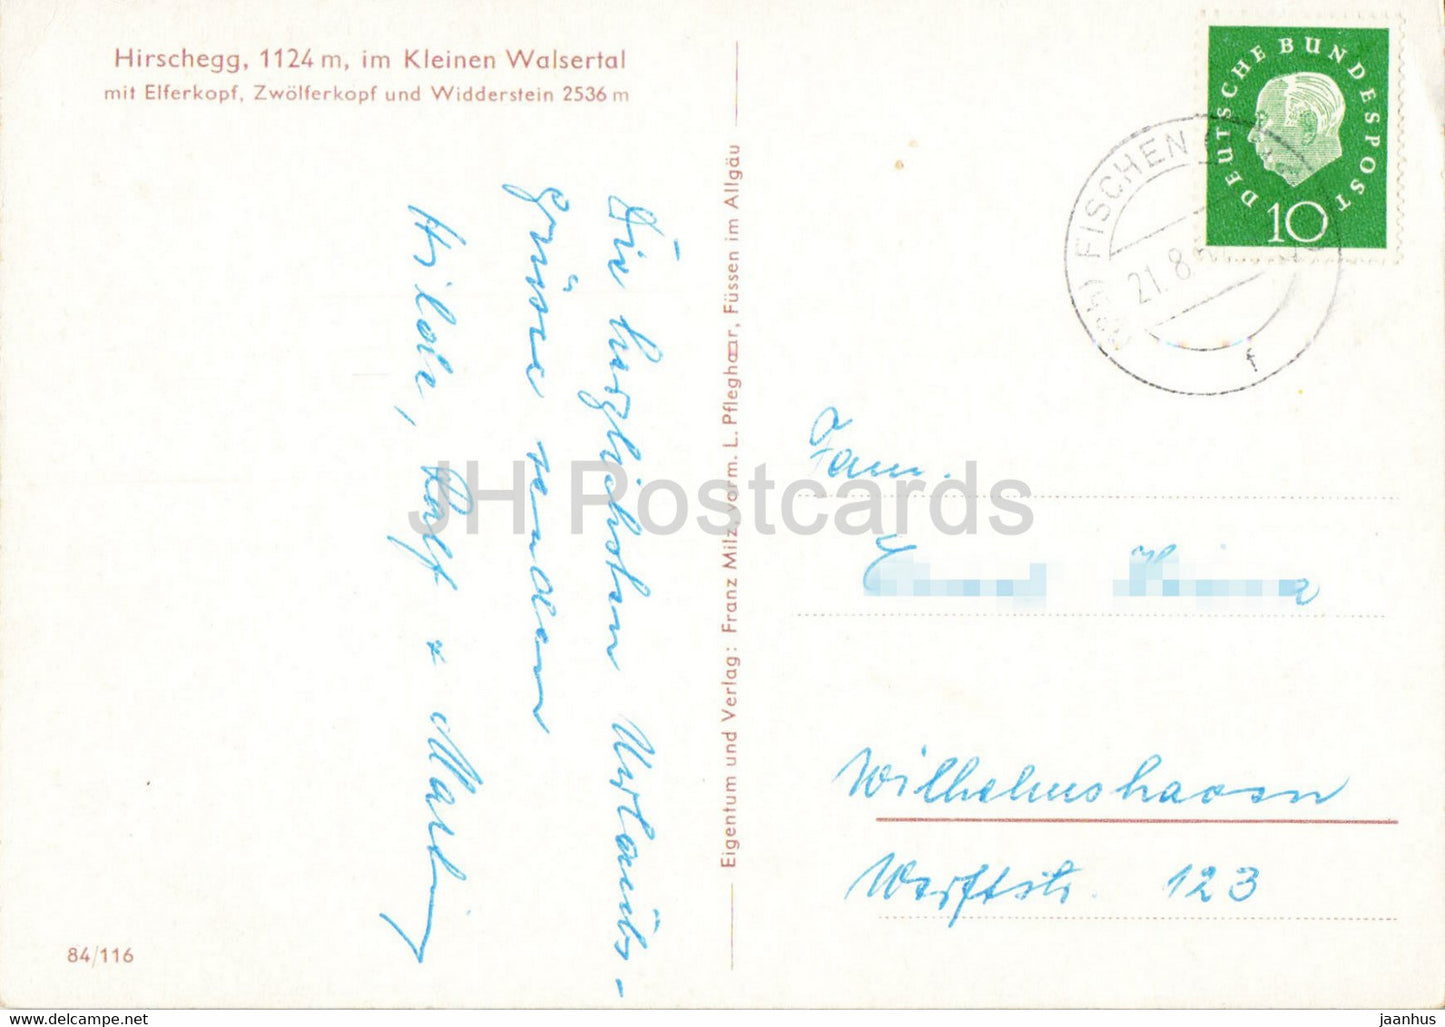 Hirschegg 1124 m - im Kleinen Walsertal - Elferkopf - Zwolferkopf - Widderstein - old postcard - Austria - used